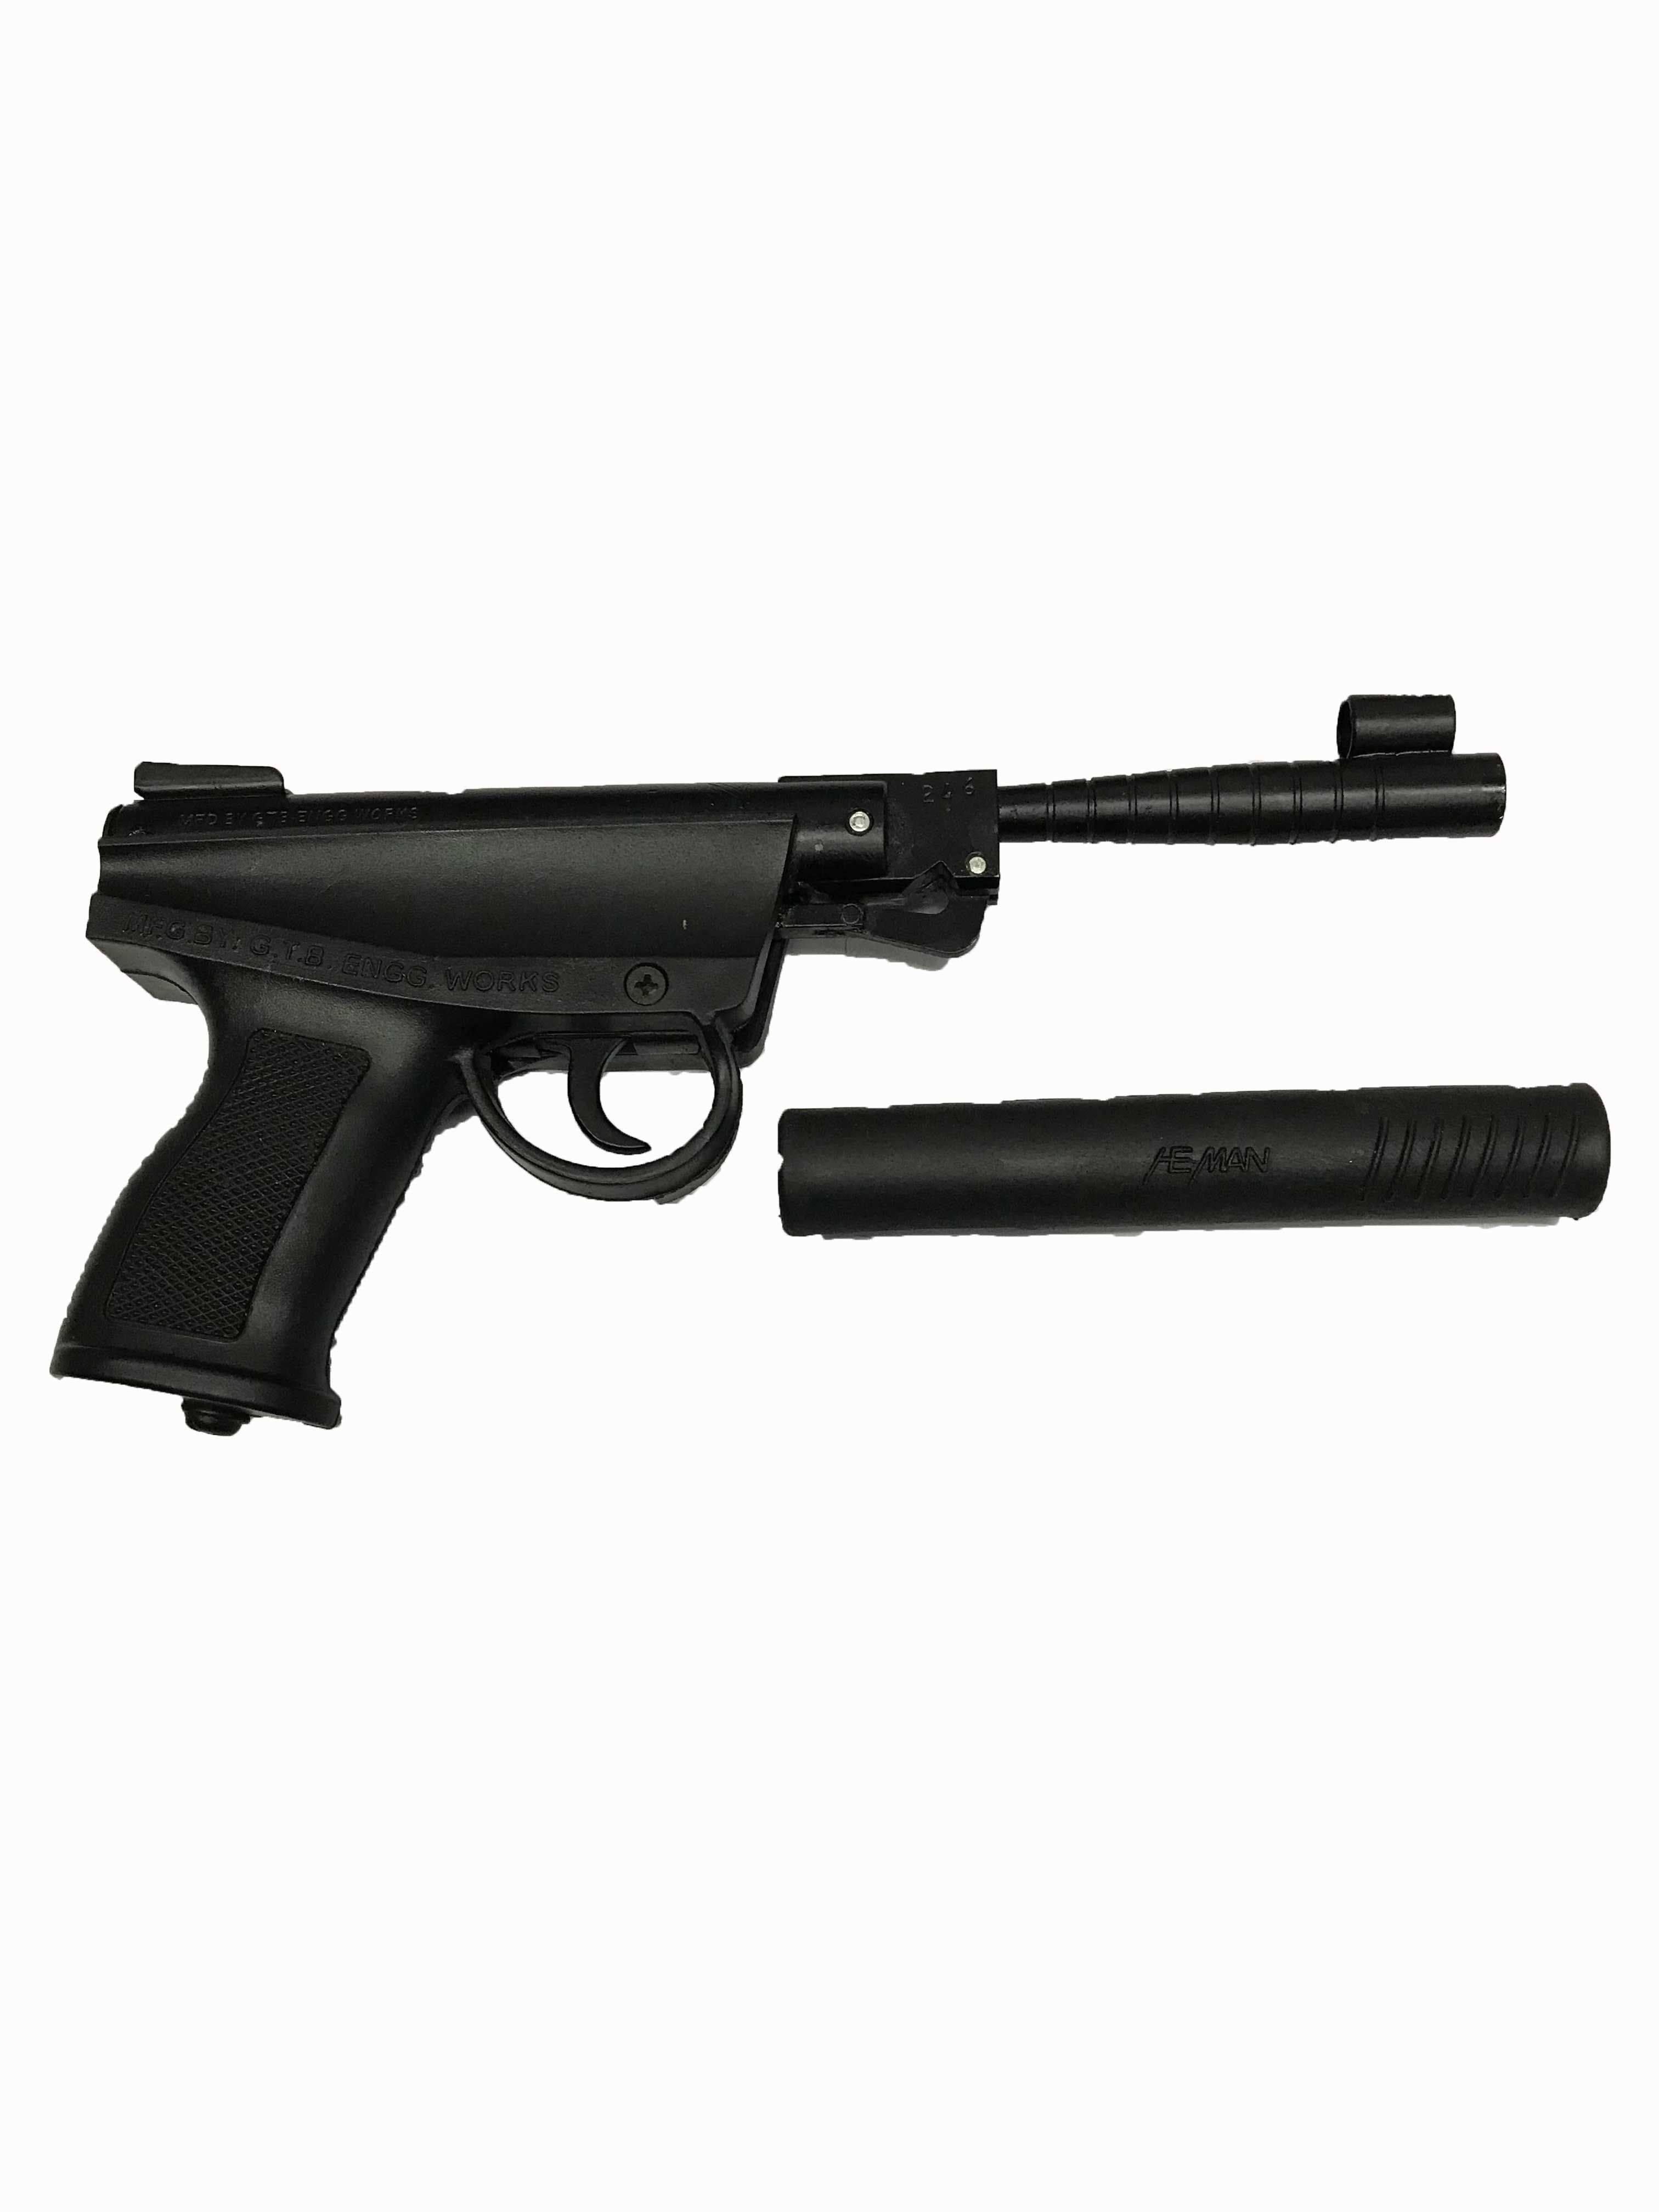 metal toy gun online